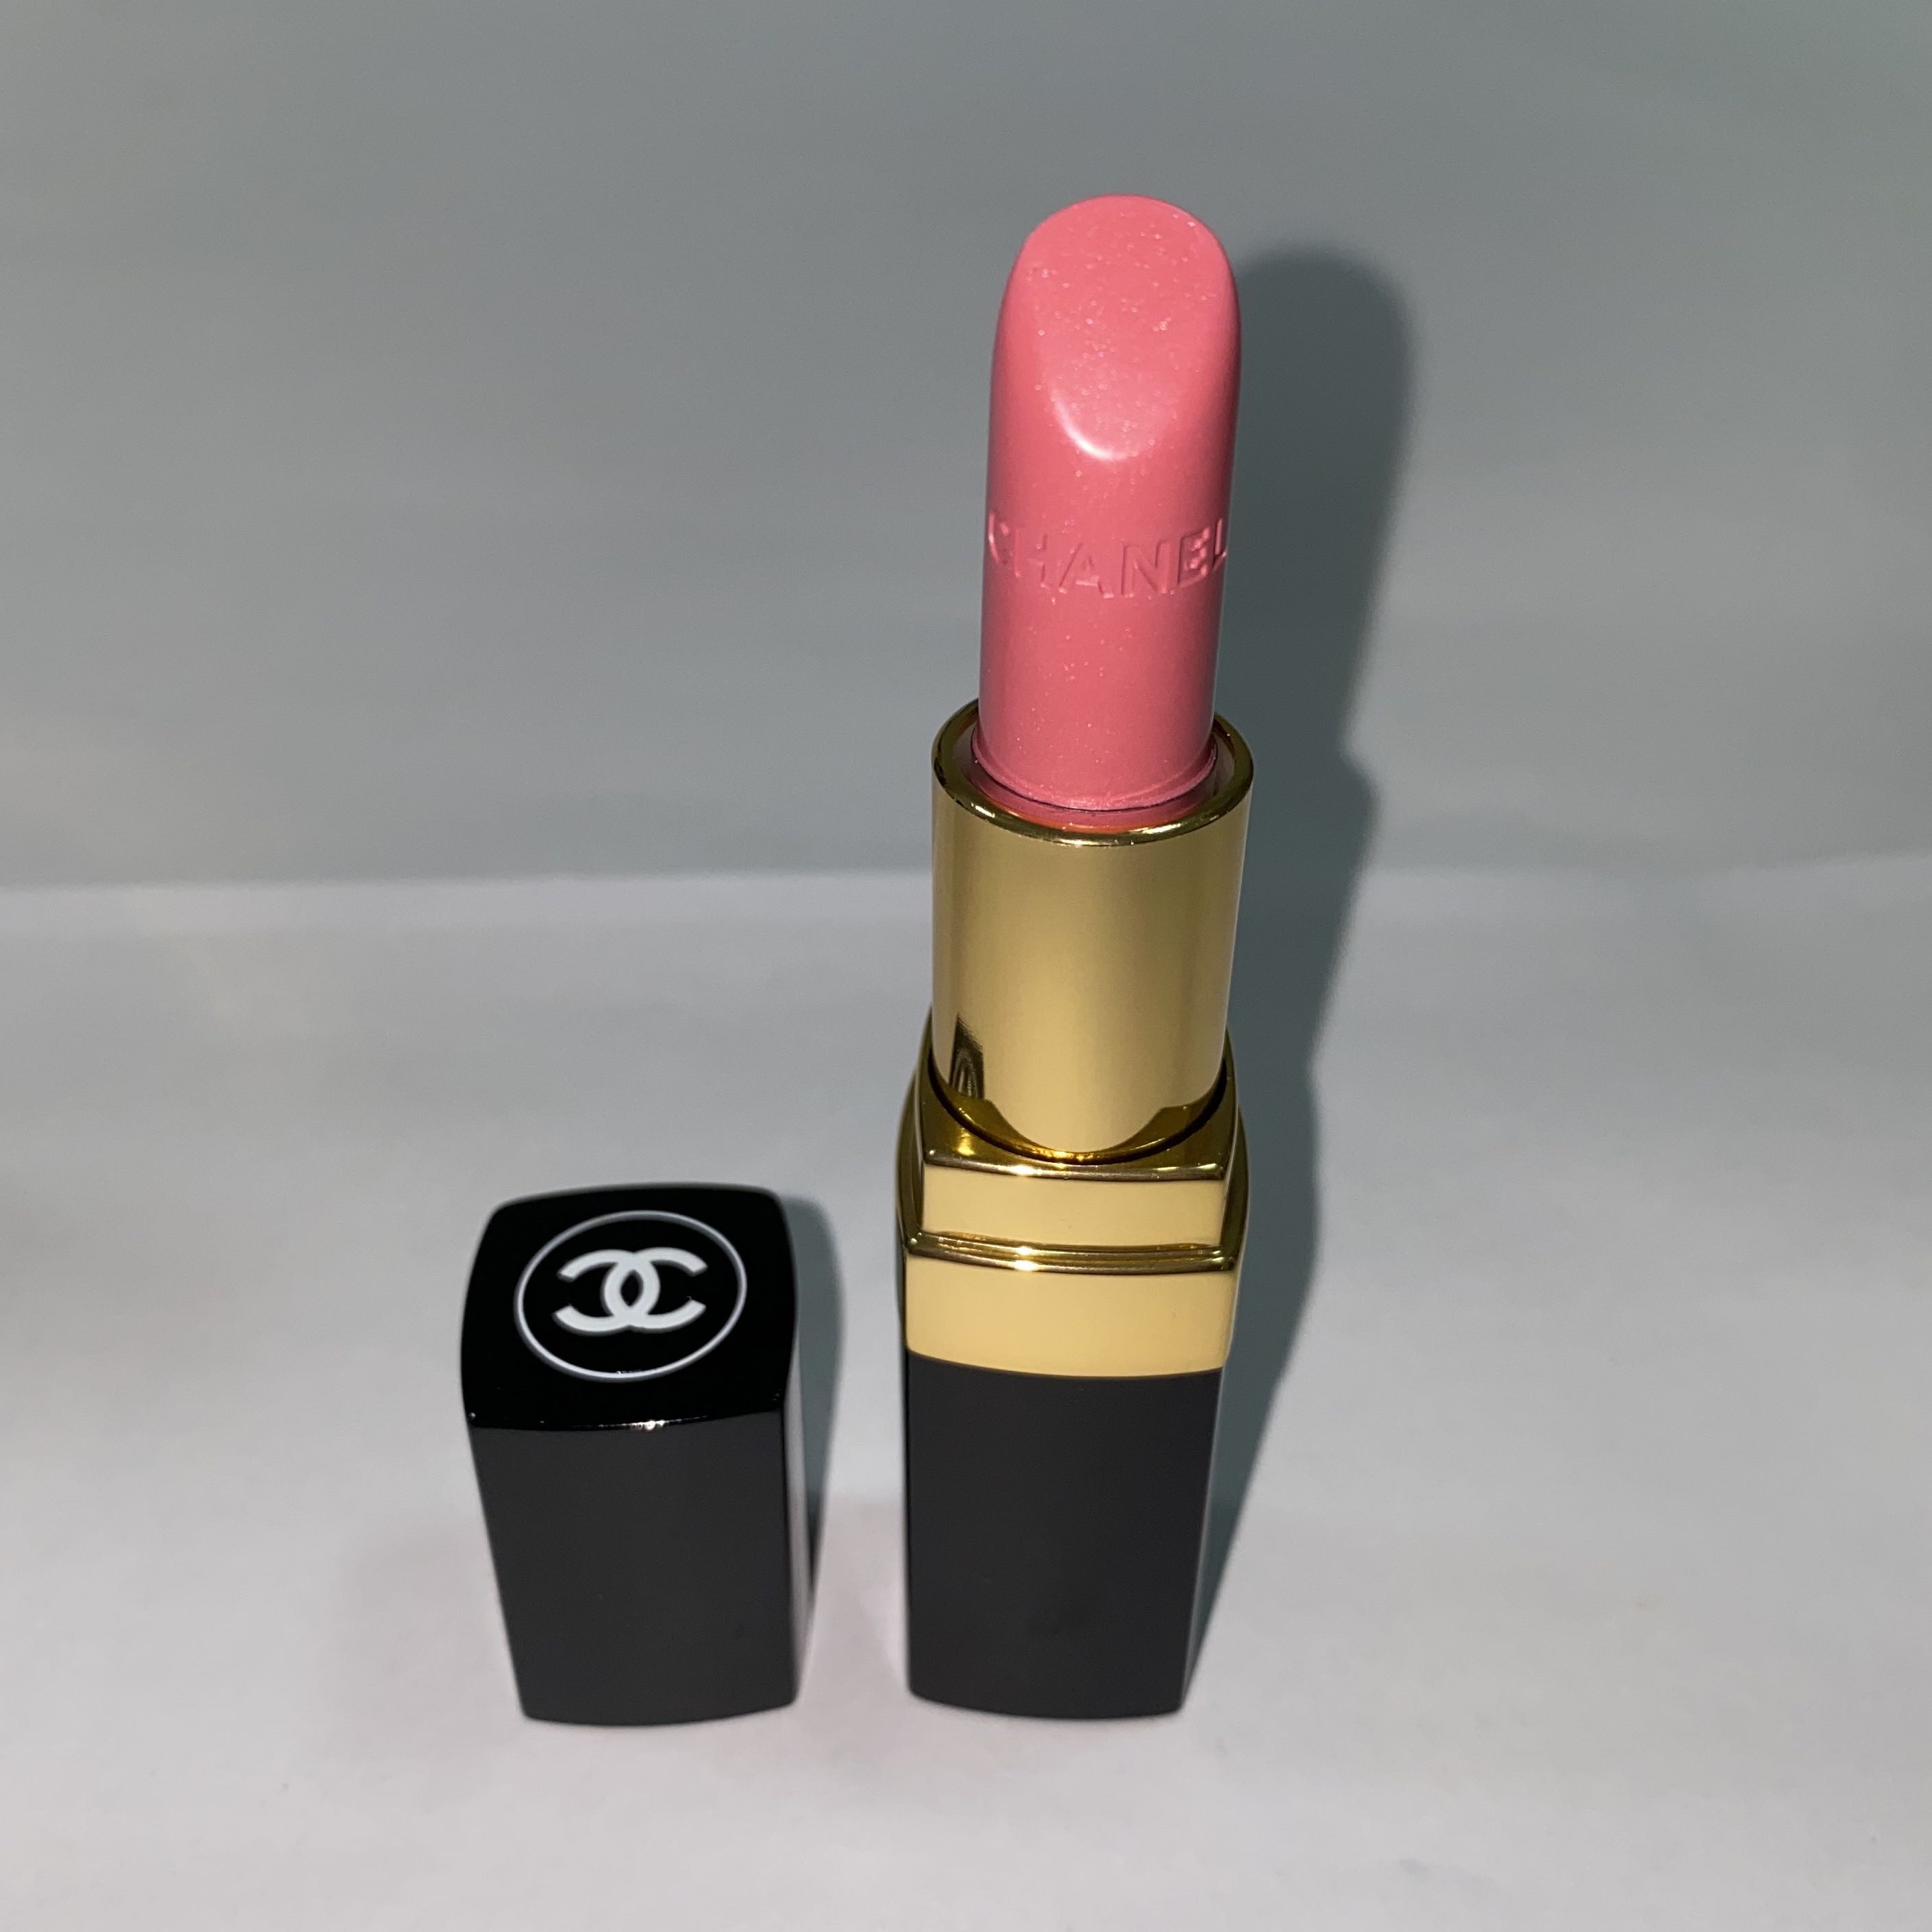 1 x New # 49 LIASON CHANEL ROUGE ALLURE Lip Colour LIPSTICK Full /S Box